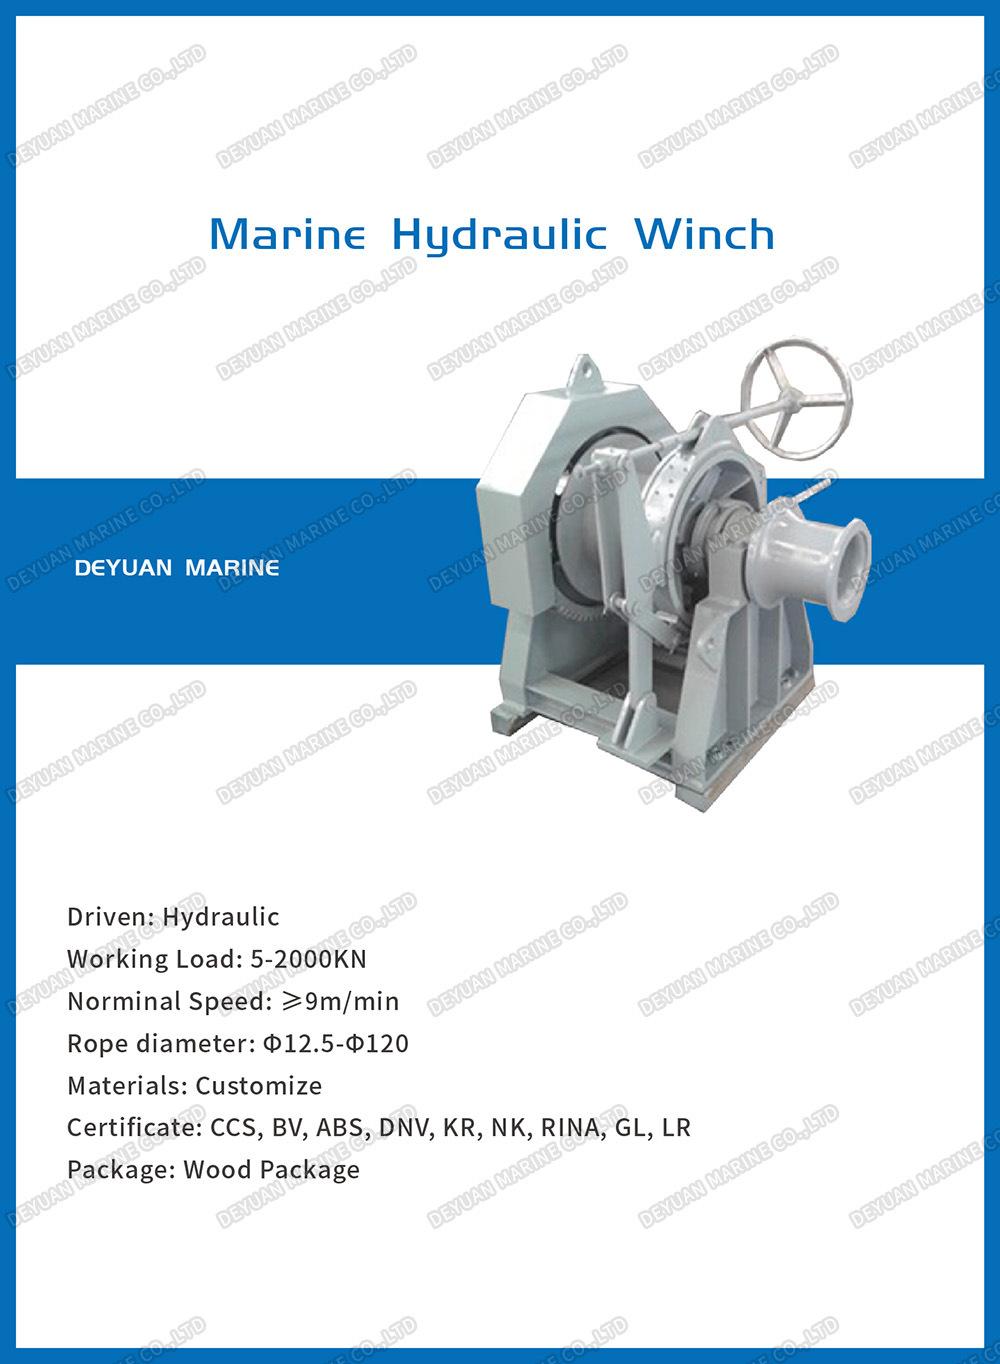 Marine Hydraulic Single Drum Winch